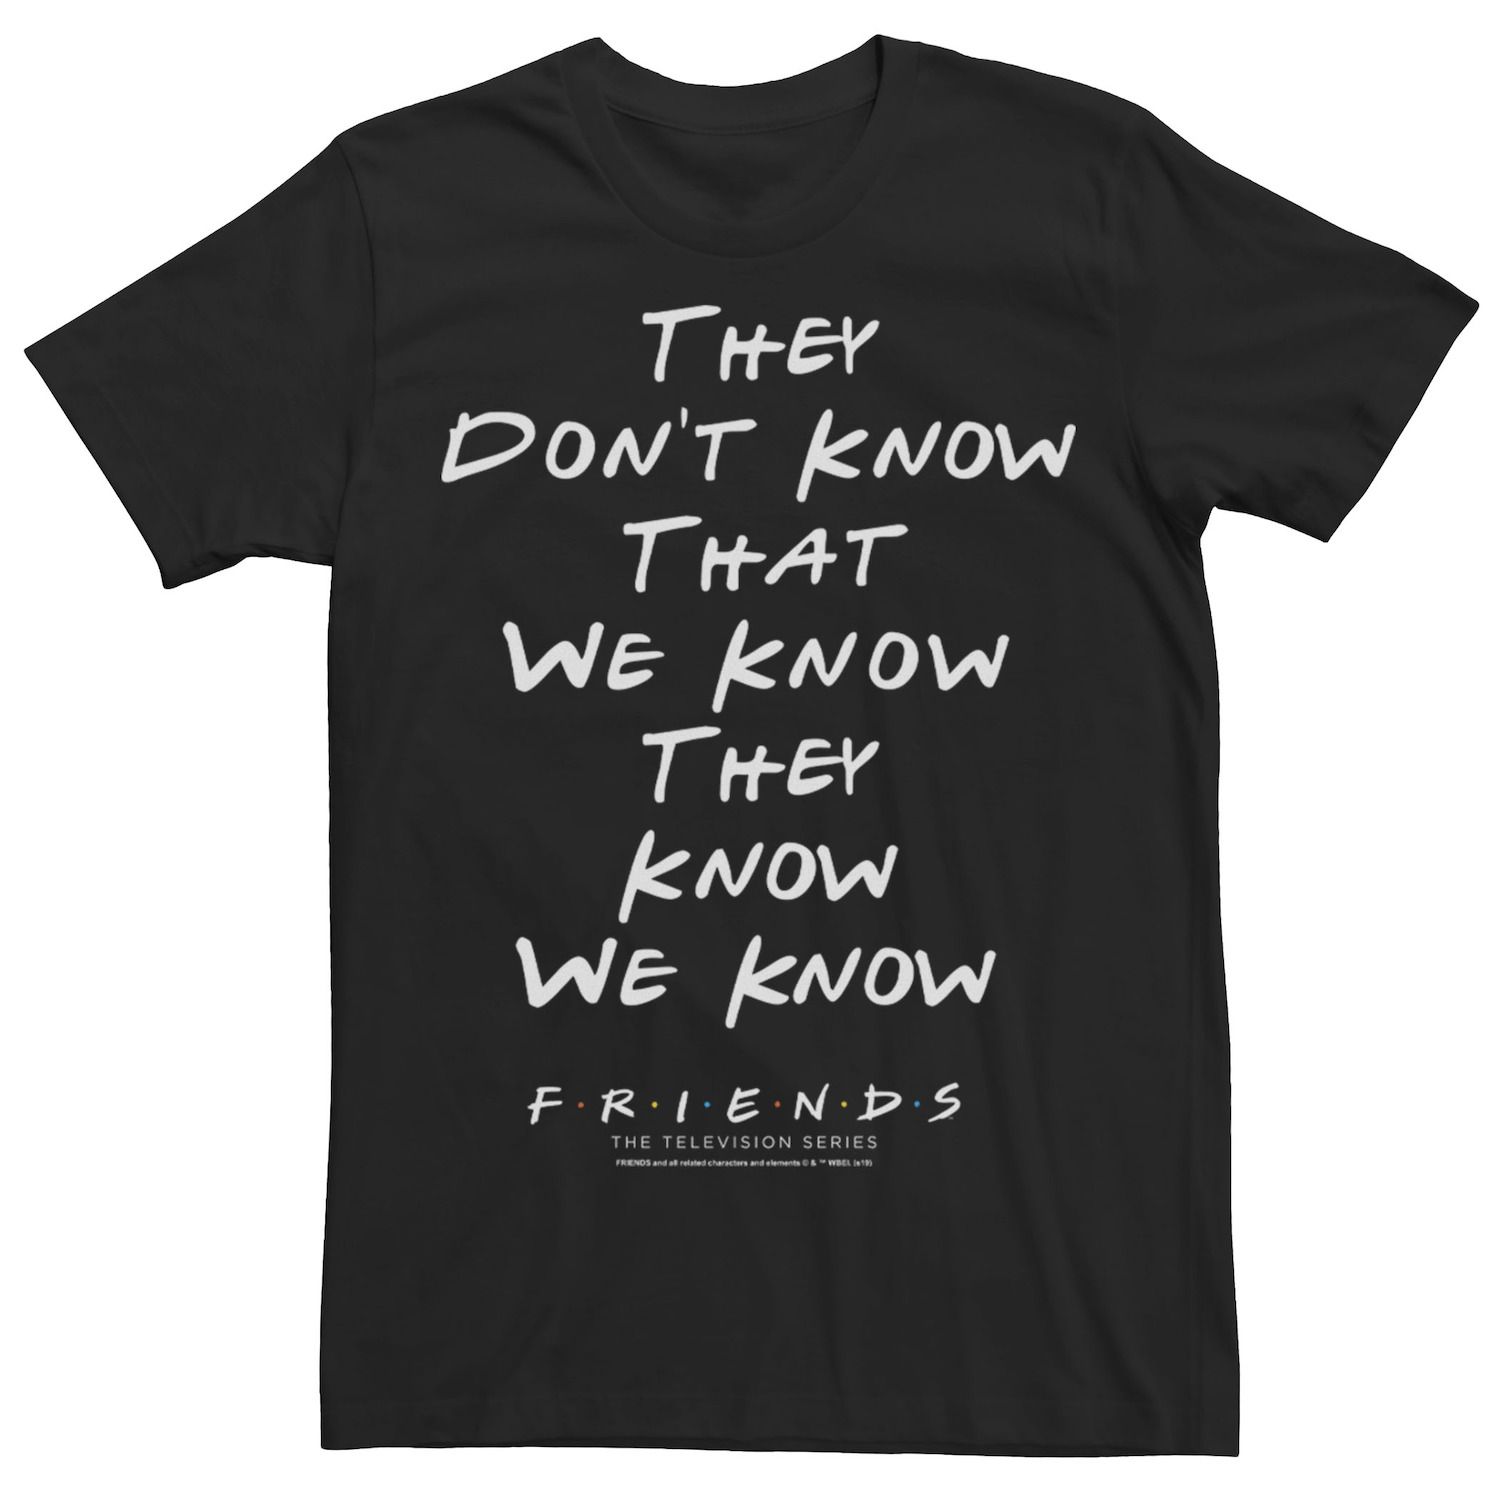 маньянти брук секс мифы почему всё что мы знаем неправда Мужская футболка с рисунком «Они не знают, что мы знаем, они знают, что мы знаем» Licensed Character